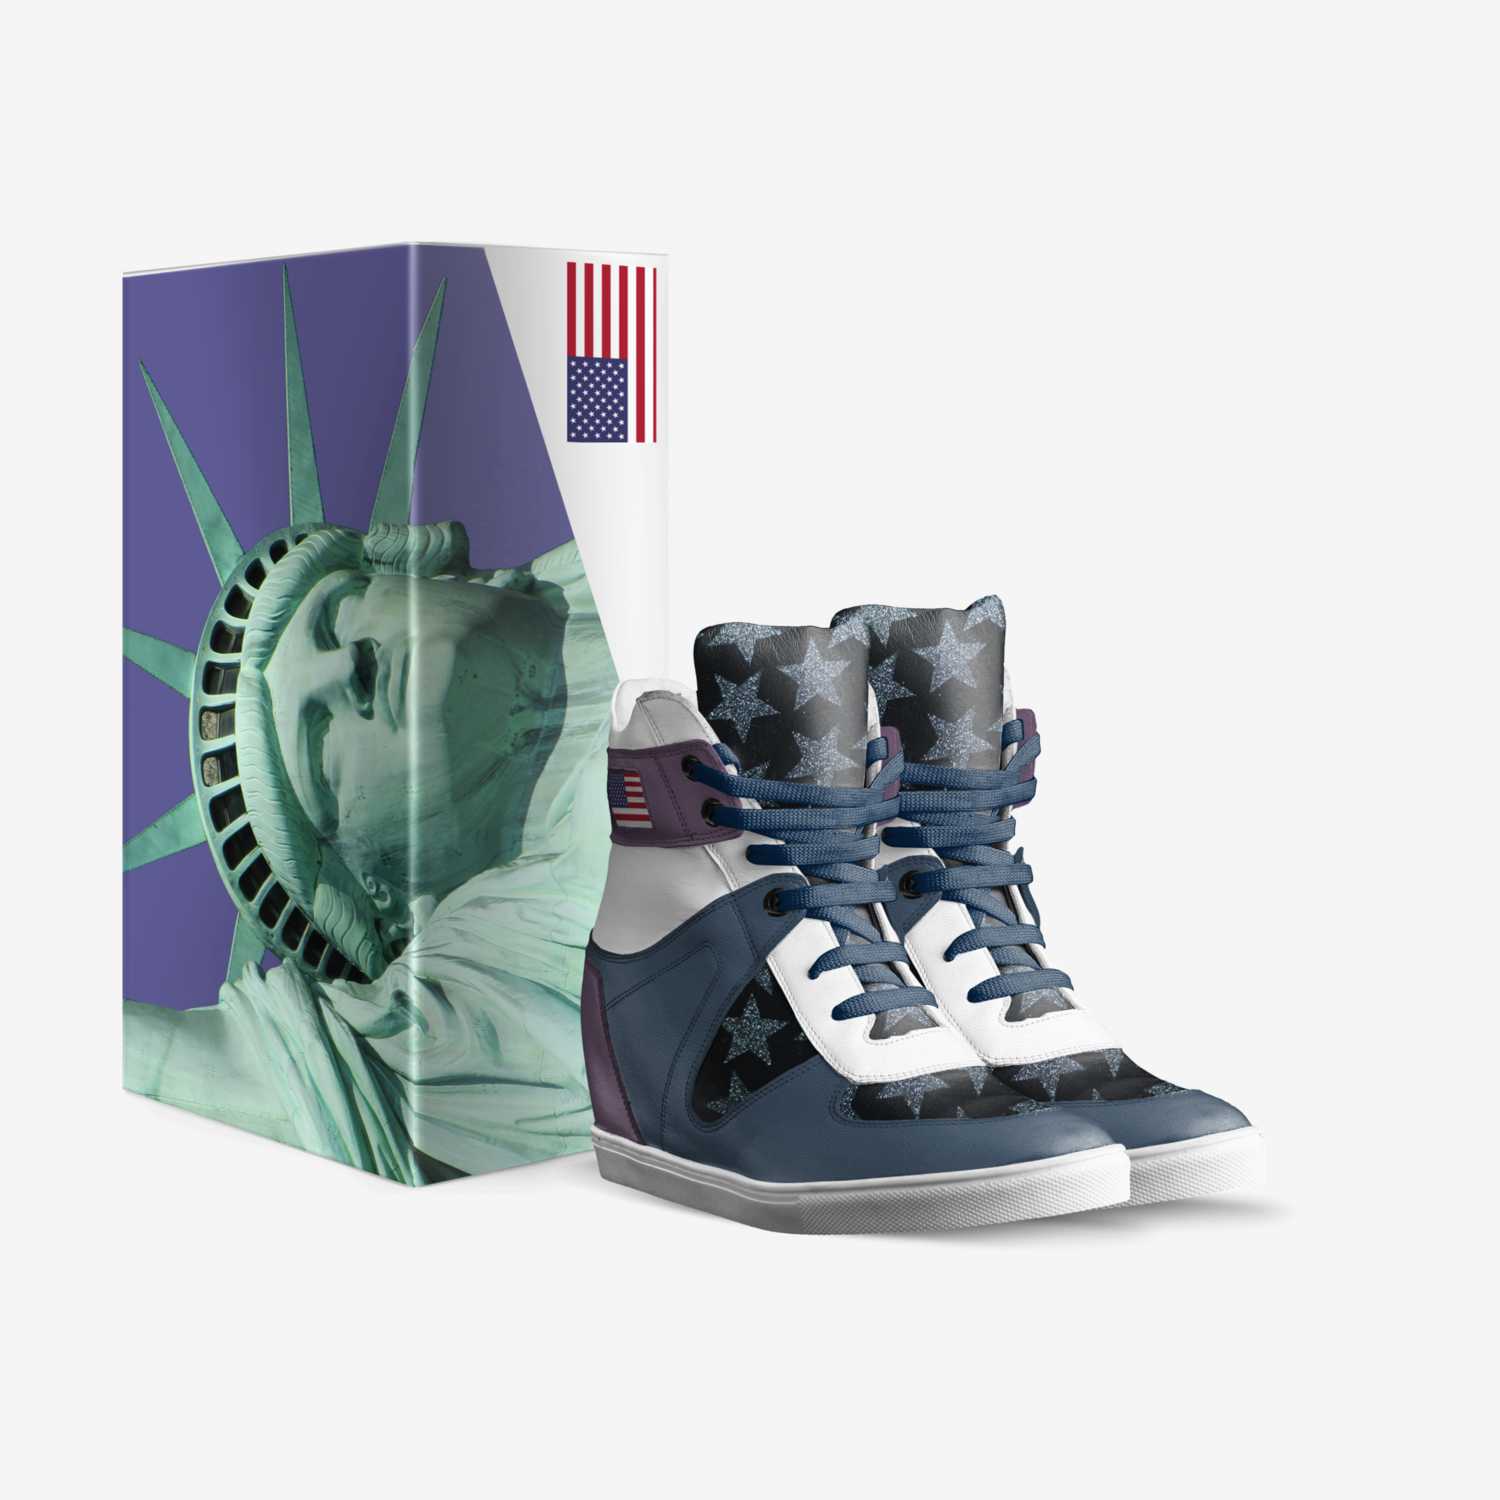 Worldie custom made in Italy shoes by Haley Poraj-wilczynski | Box view